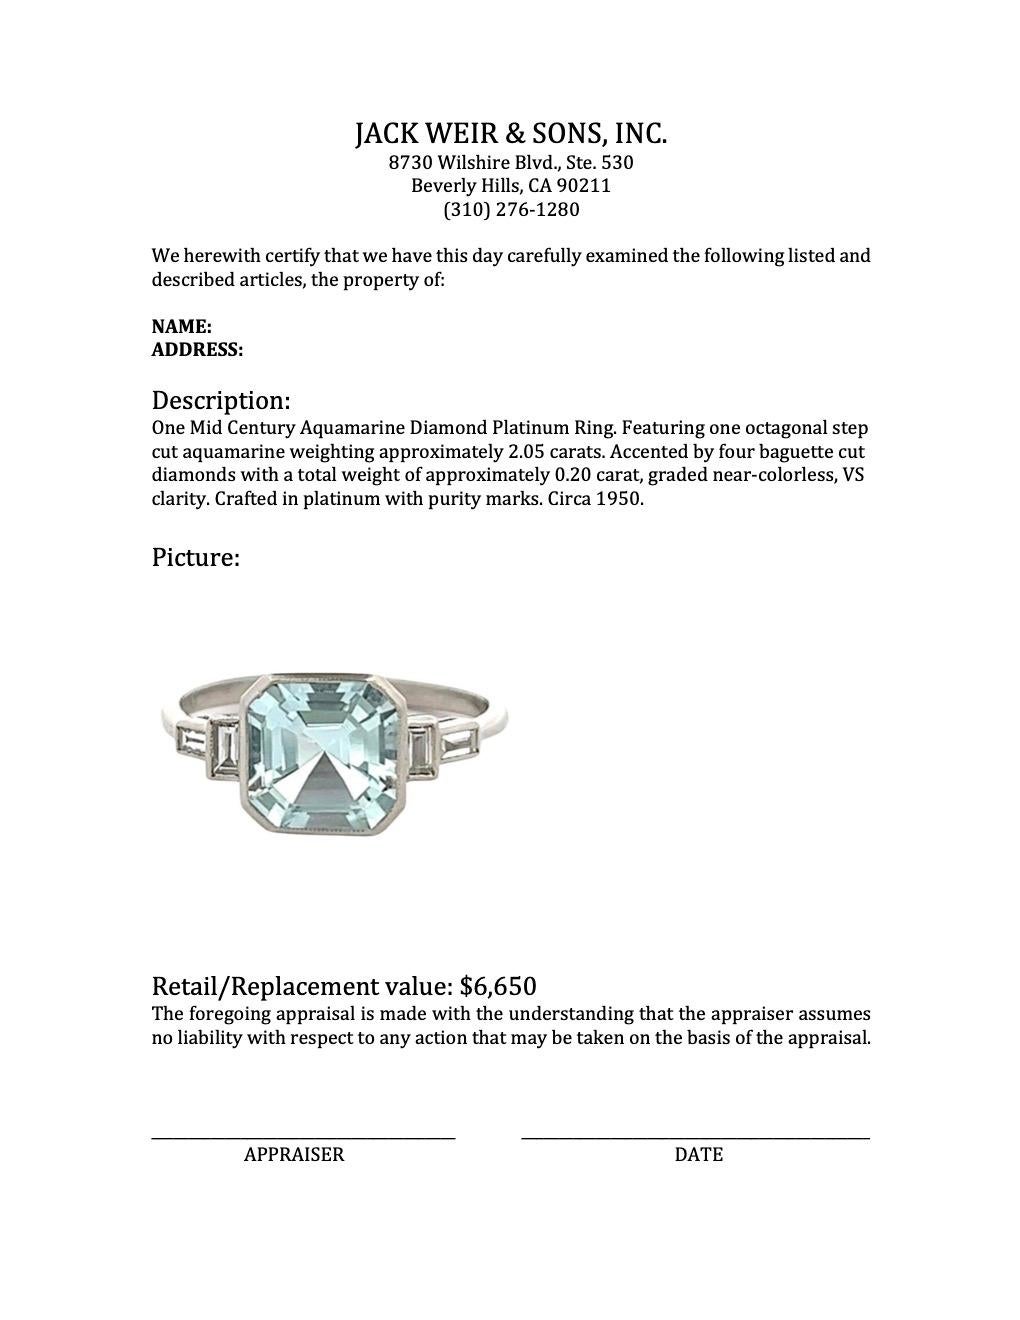 Midcentury Aquamarine Diamond Platinum Ring 2